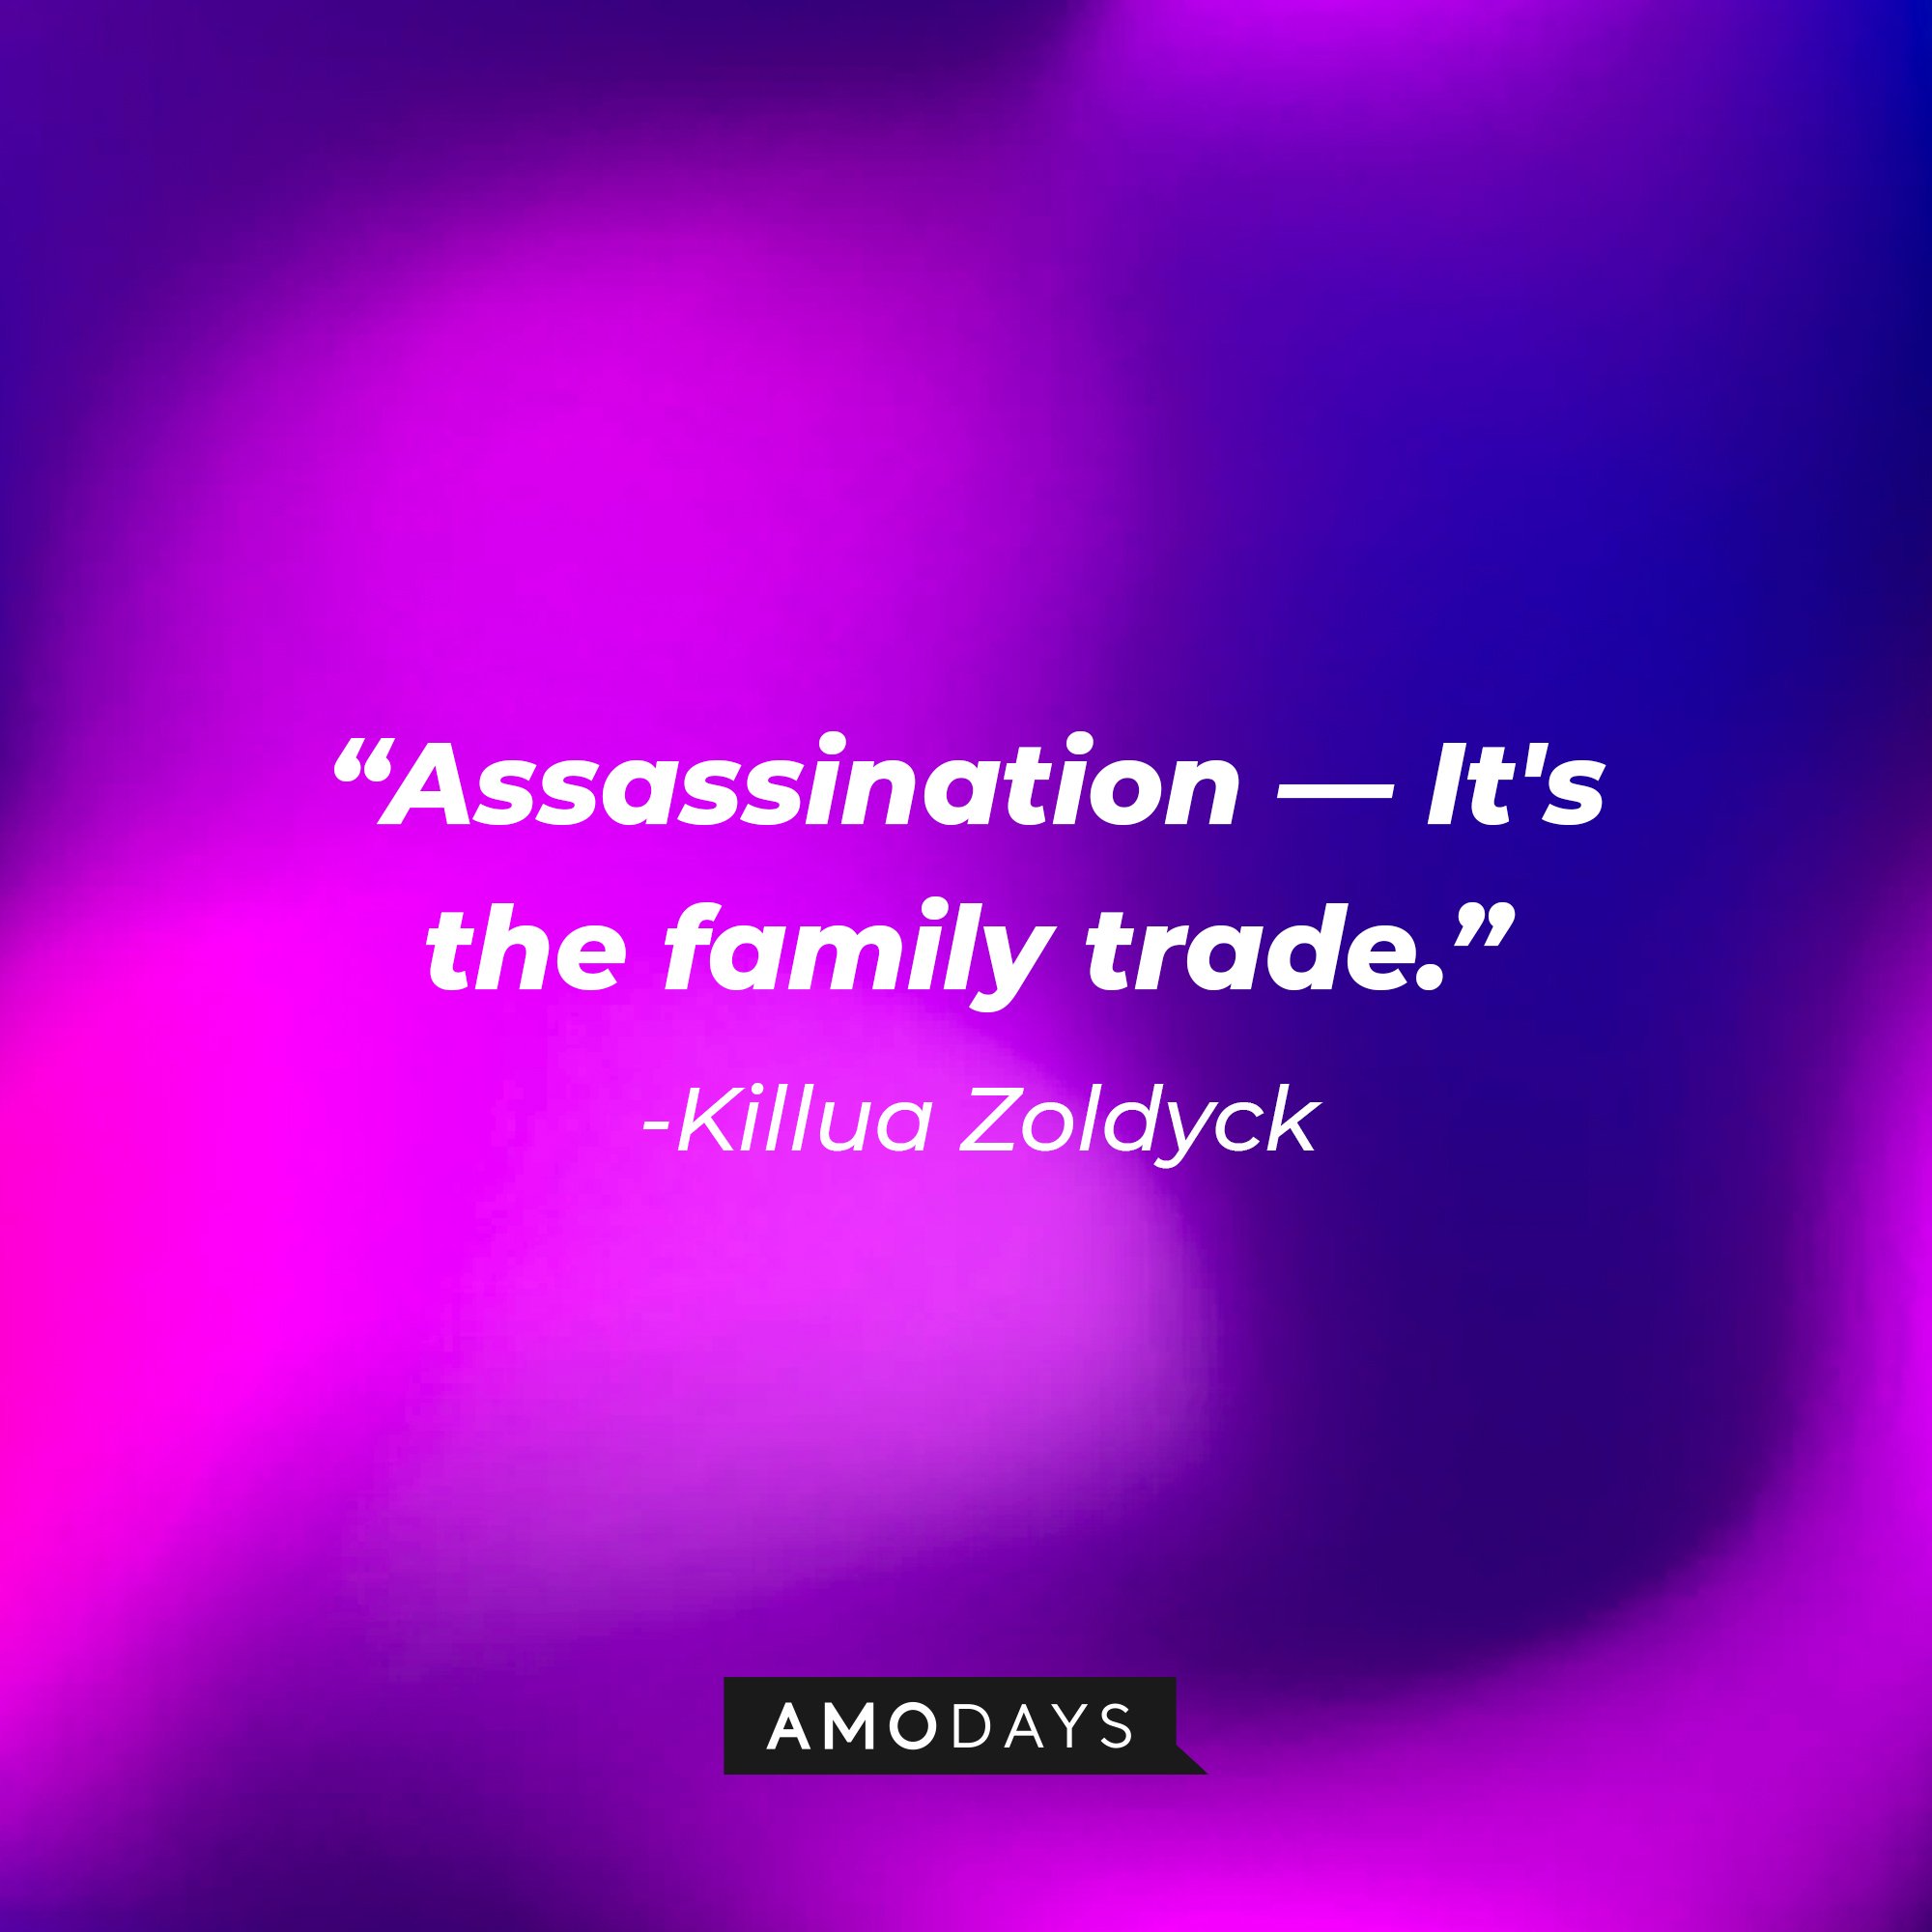 Killua Zoldyck’s quote: "Assassination — It's the family trade.” | Image: AmoDays 